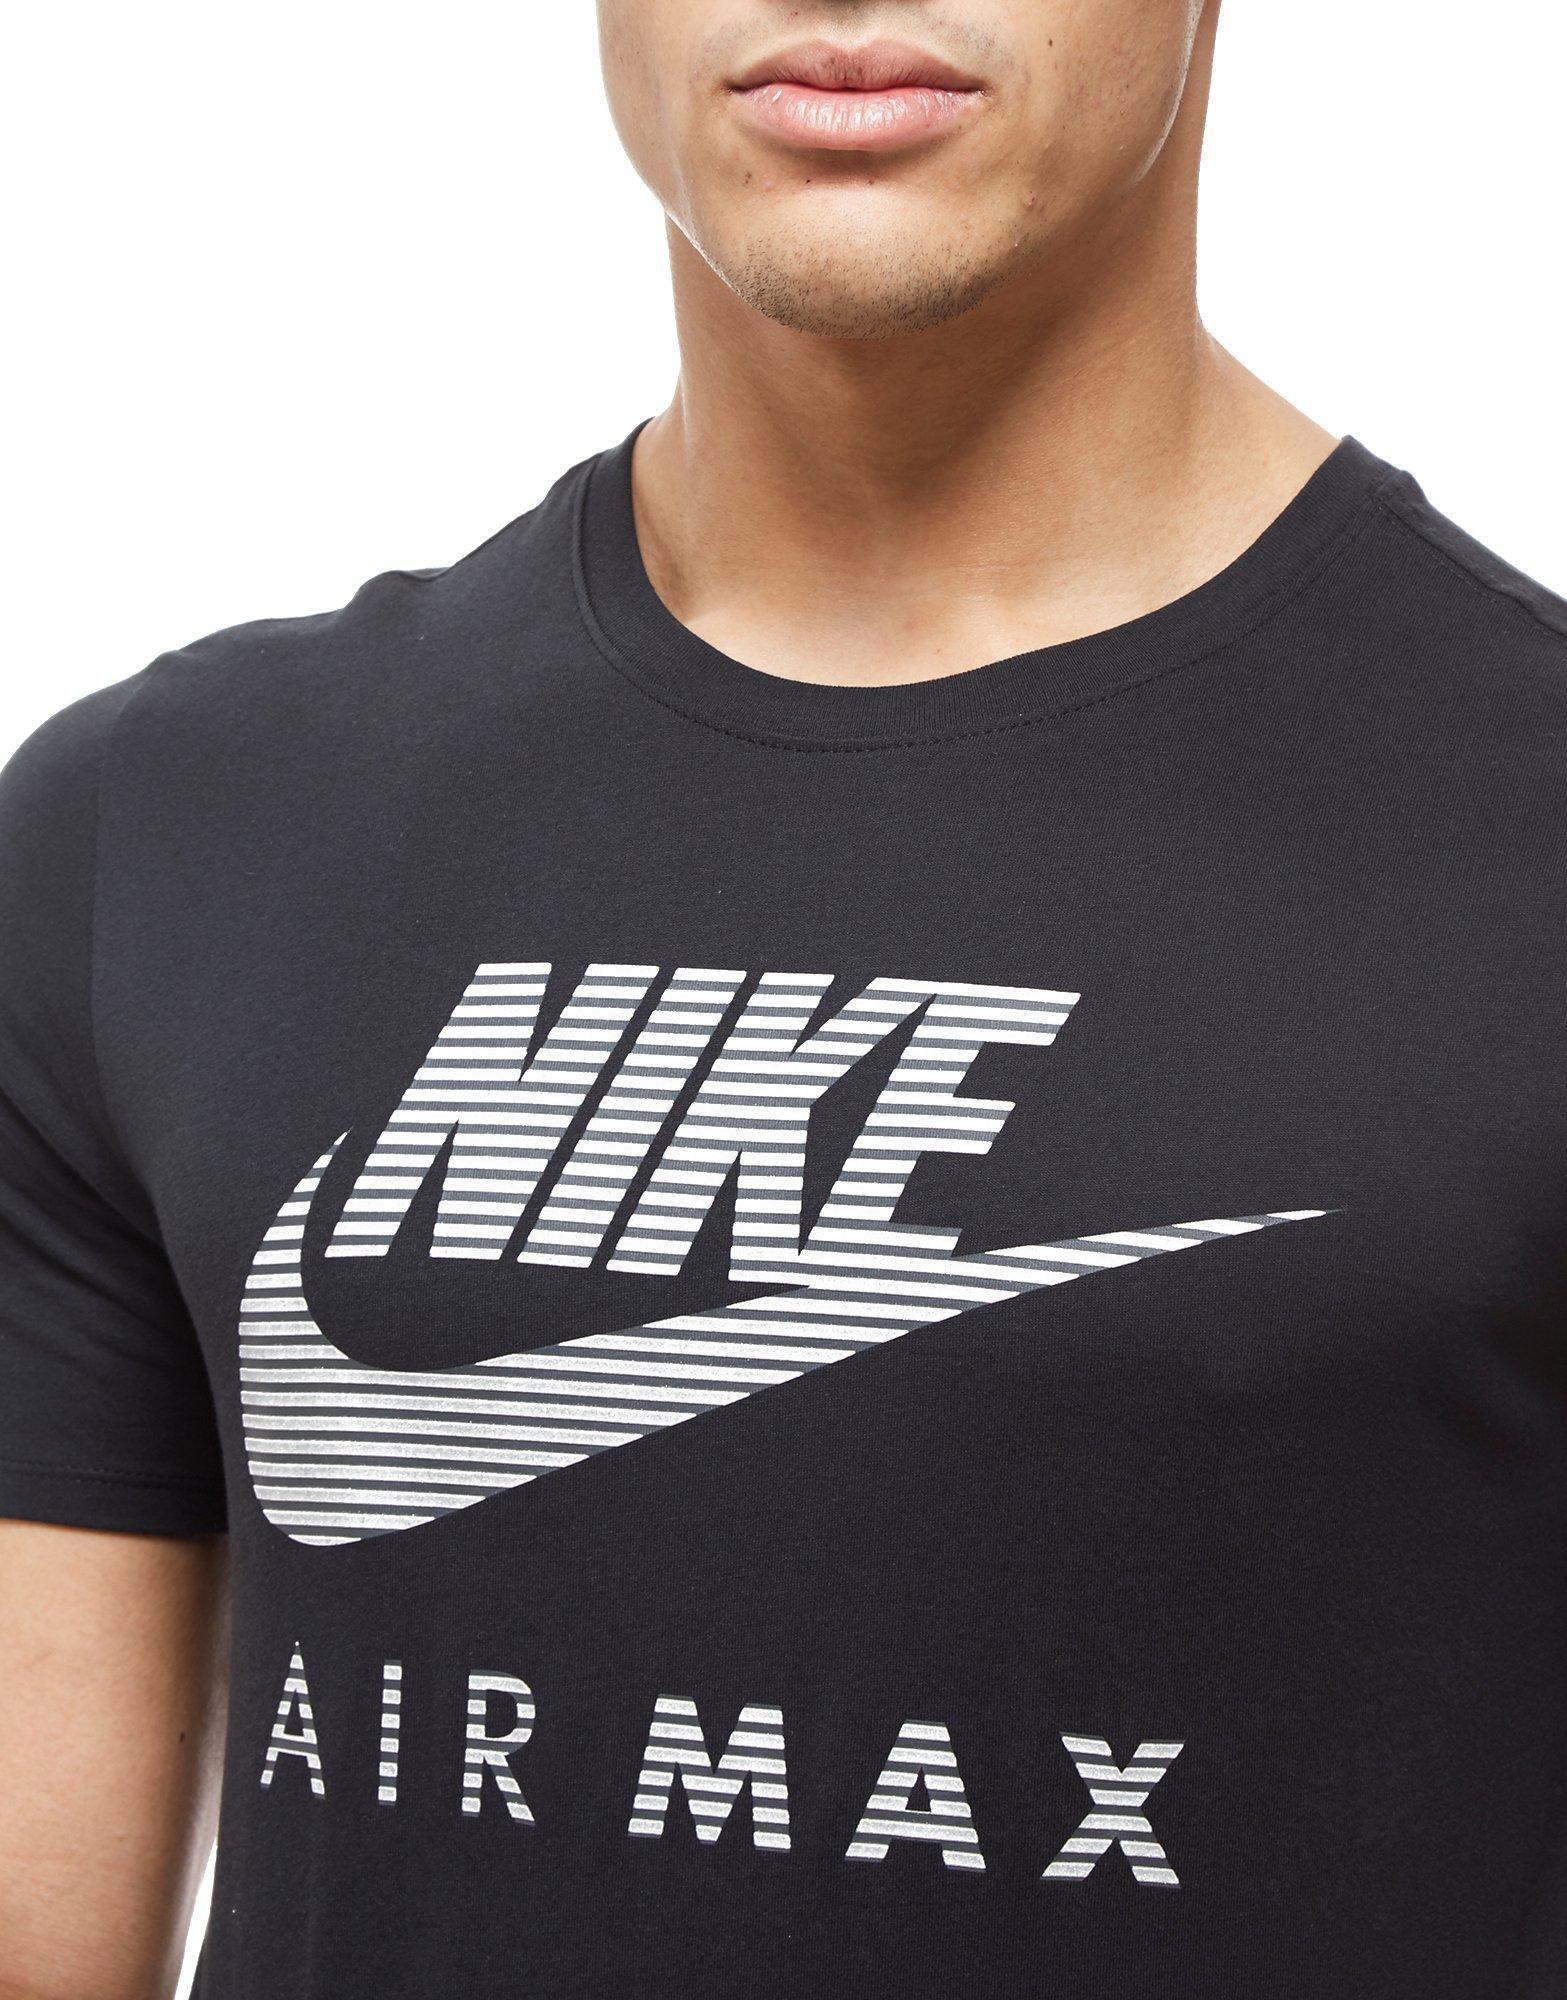 nike air max black t shirt